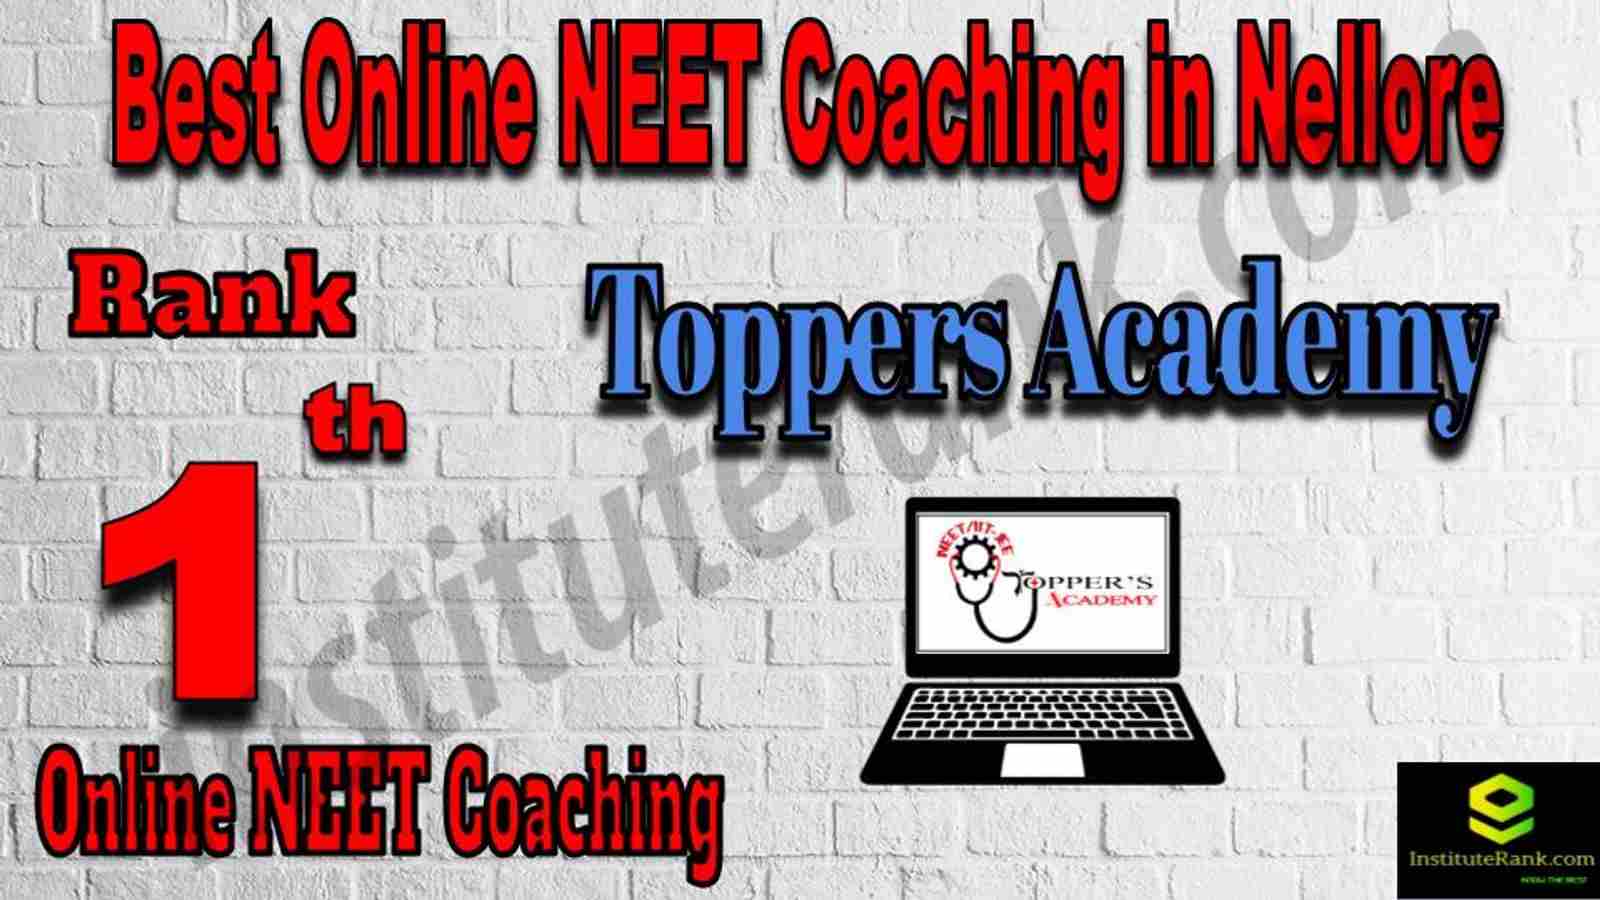 Rank 1 Best Online NEET Coaching in Nellore